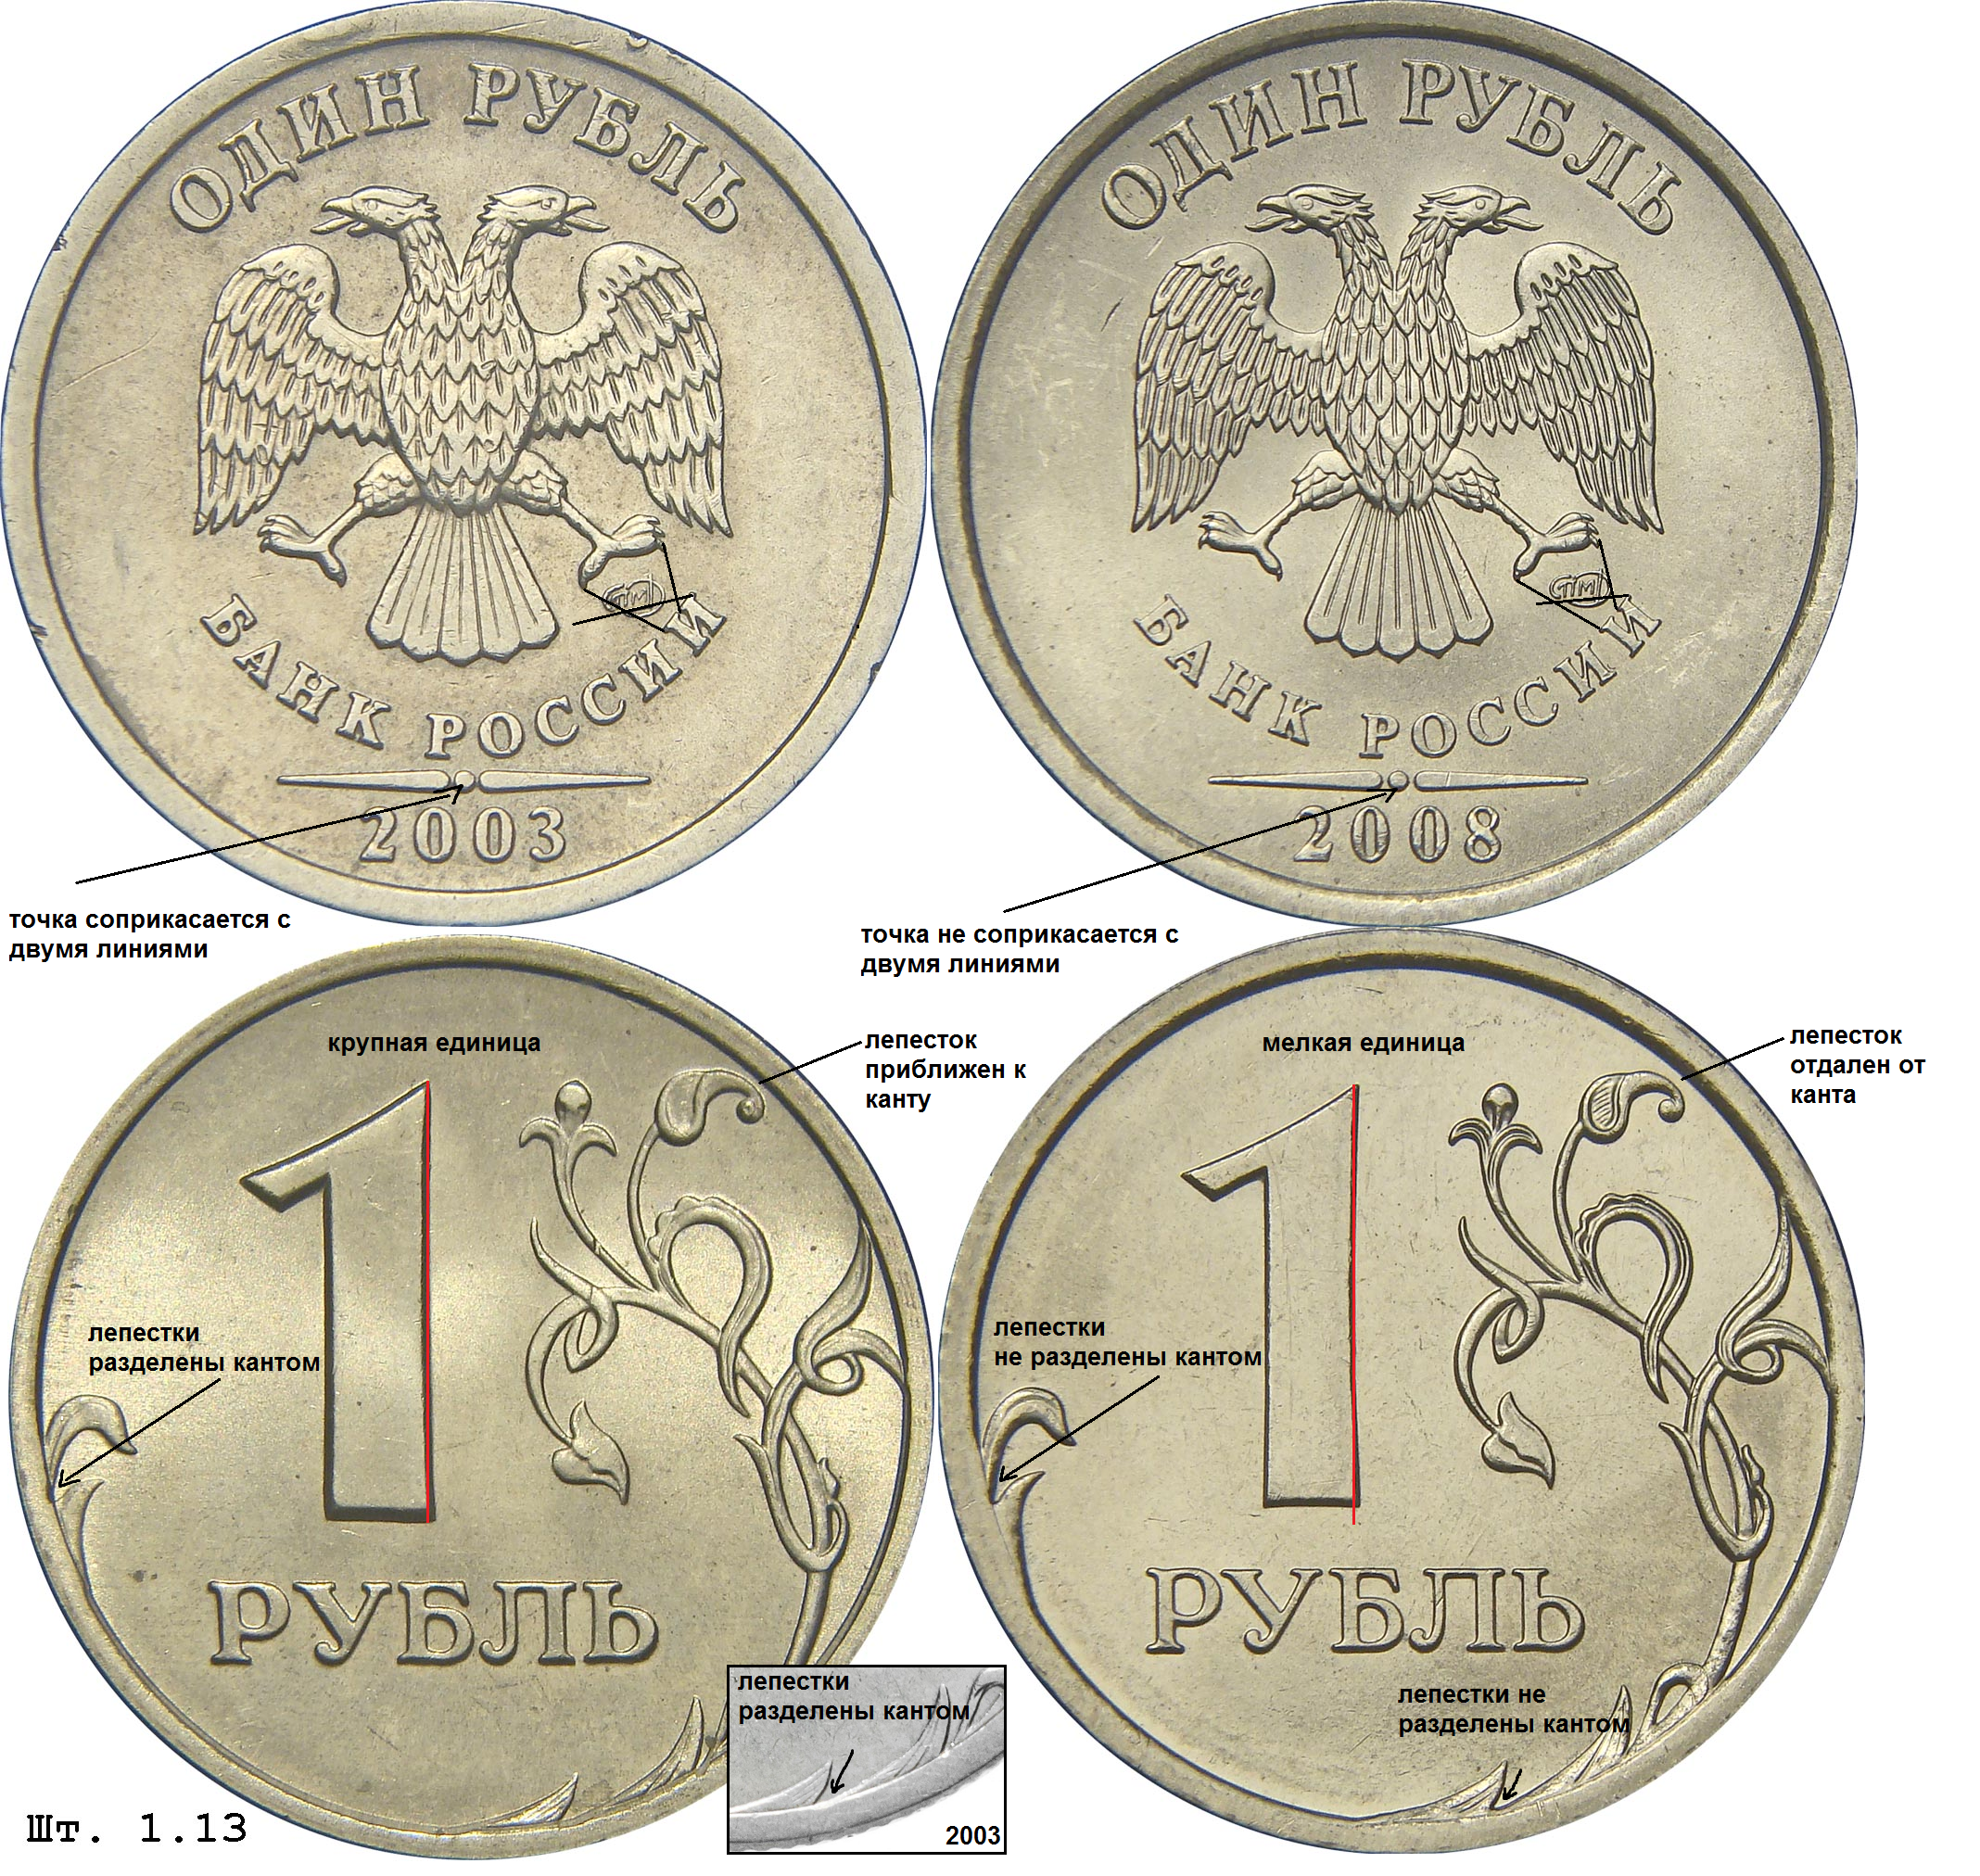 Какие монеты дал папа марине. Редкие монеты. Редкие русские монеты. Самые редкие монеты России. Самые дорогие монеты 1 рубль.